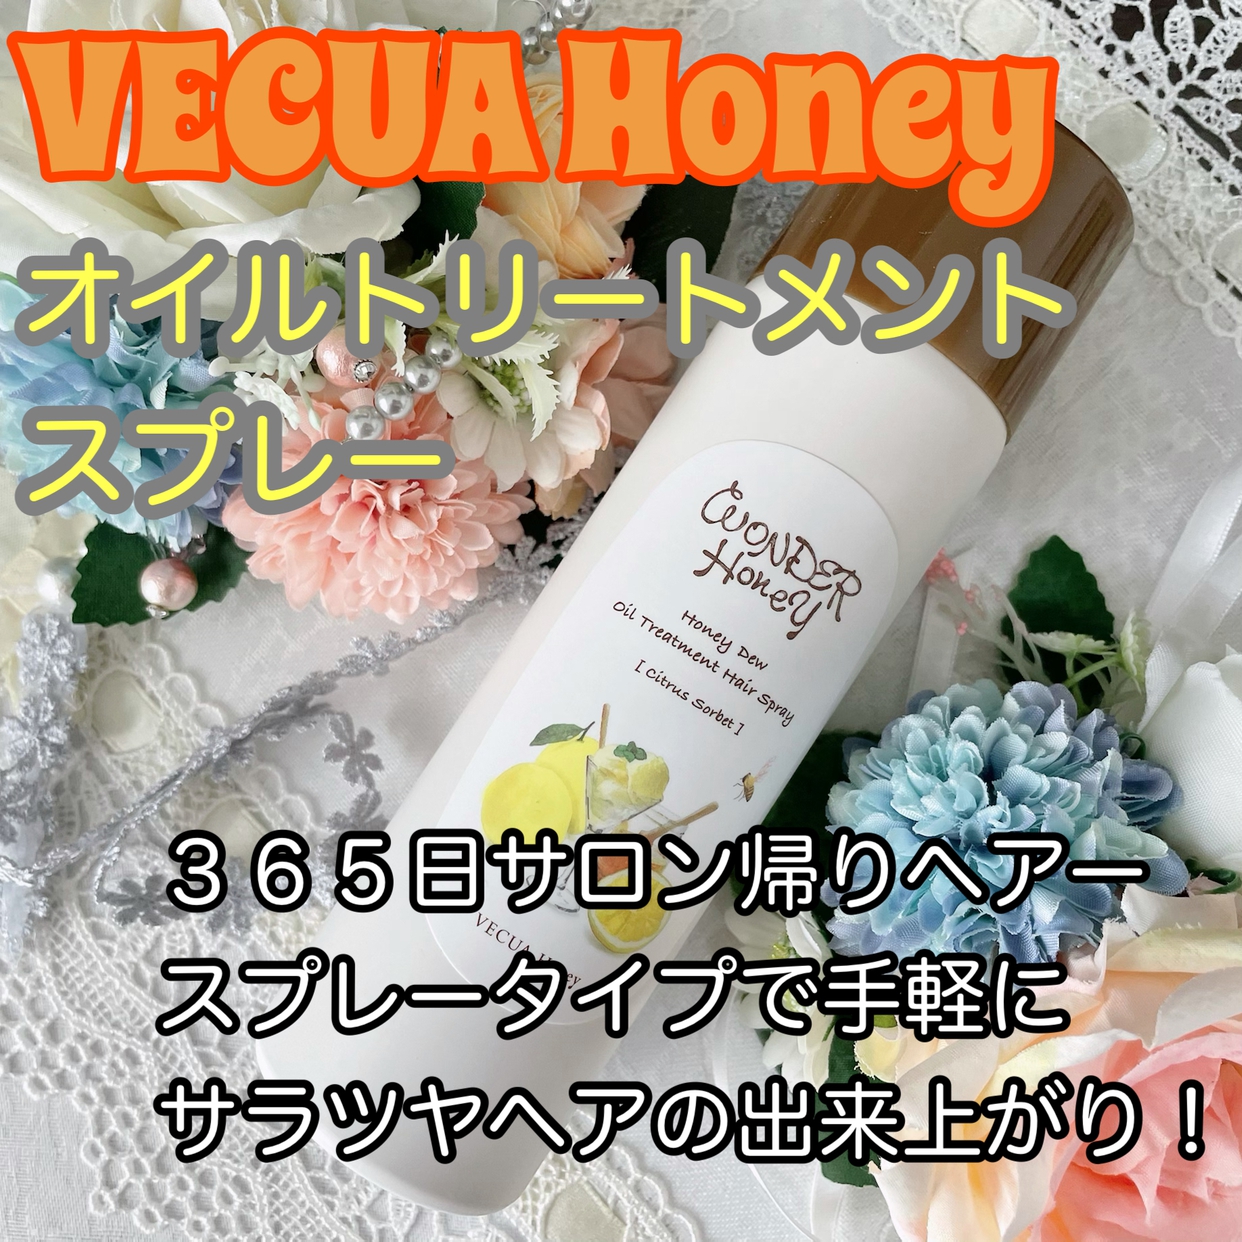 VECUA Honey(べキュア ハニー) ワンダーハニー 艶つや髪の香るオイルトリートメントの良い点・メリットに関するかおきちさんの口コミ画像1